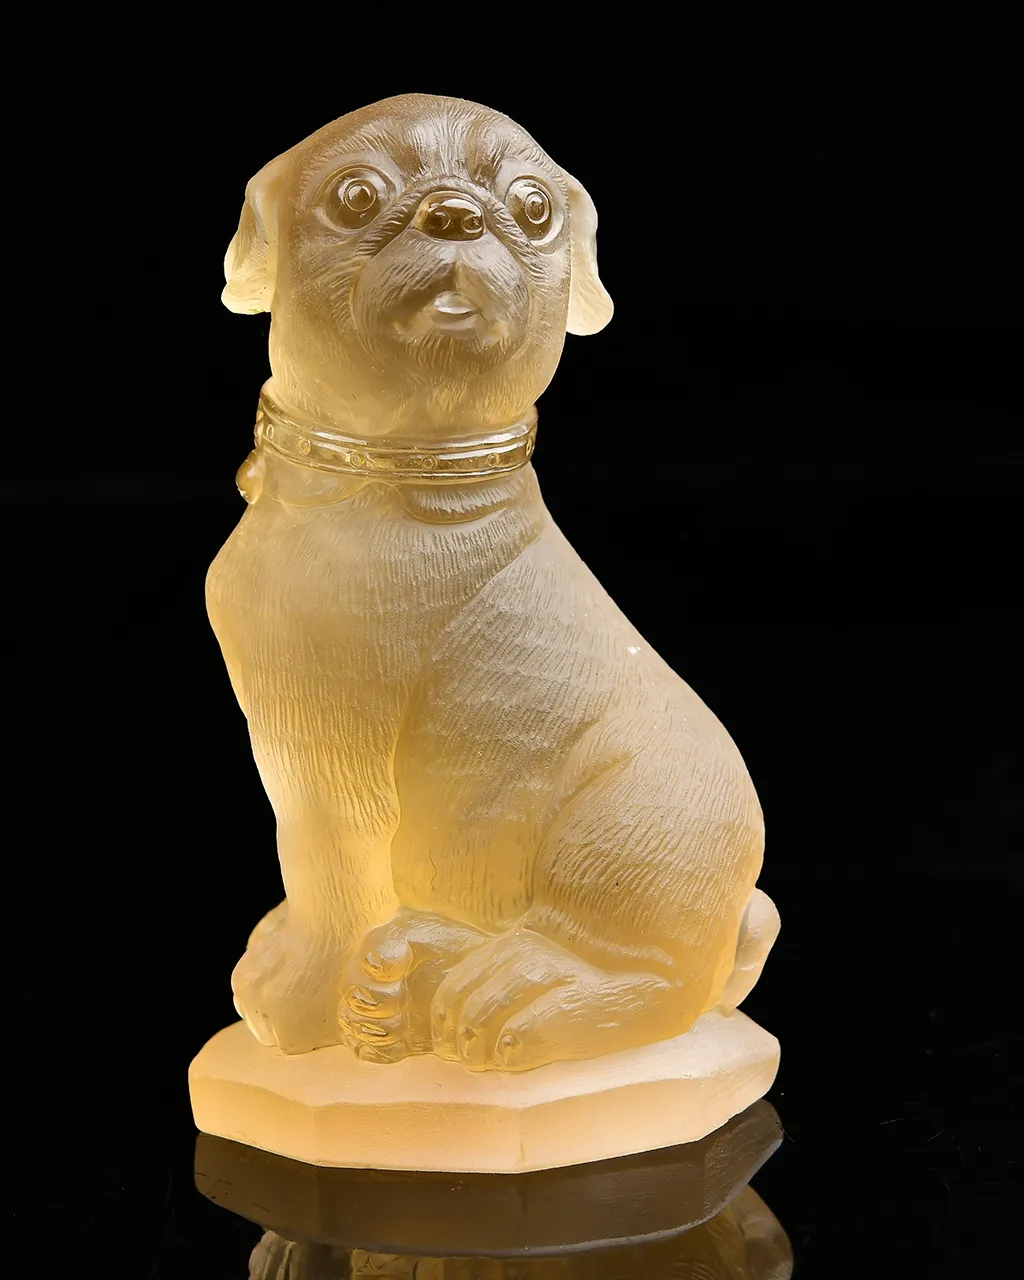 招财旺财神器，天然黄水晶旺财狗摆件  狗是忠诚和勇敢的象征，被视为吉祥的动物，黄水晶招财进财，